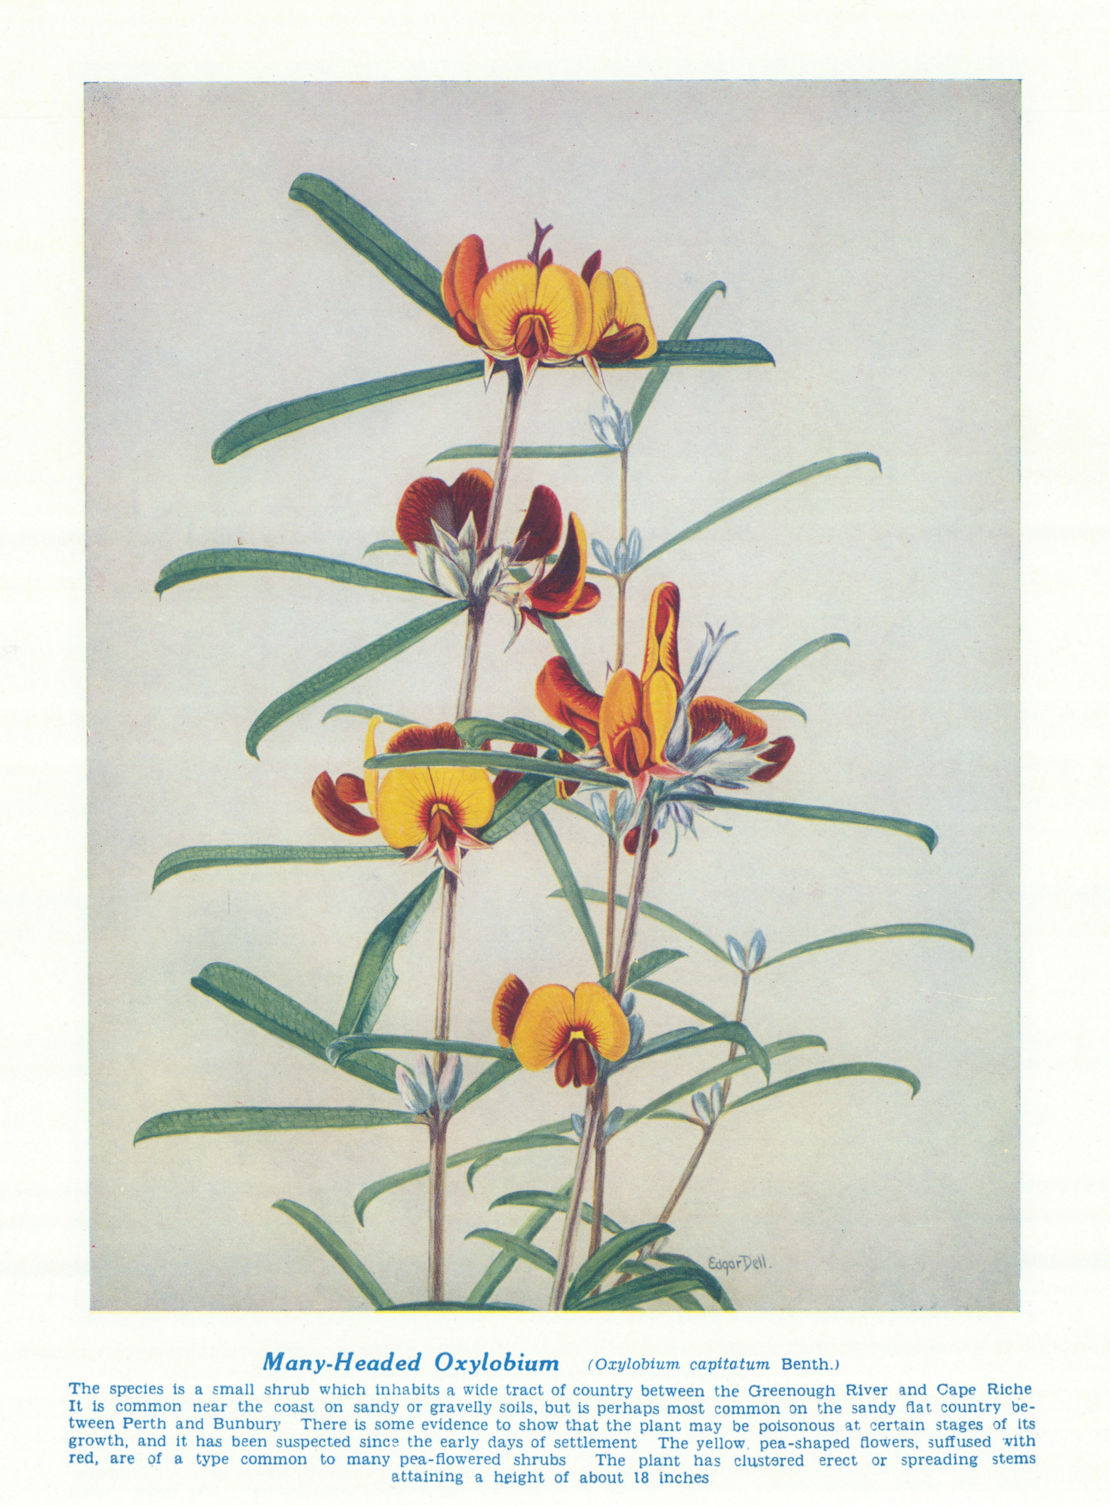 Associate Product Many-headed Oxylobium (Oxylobium capitatum). West Australian Wild Flowers 1950